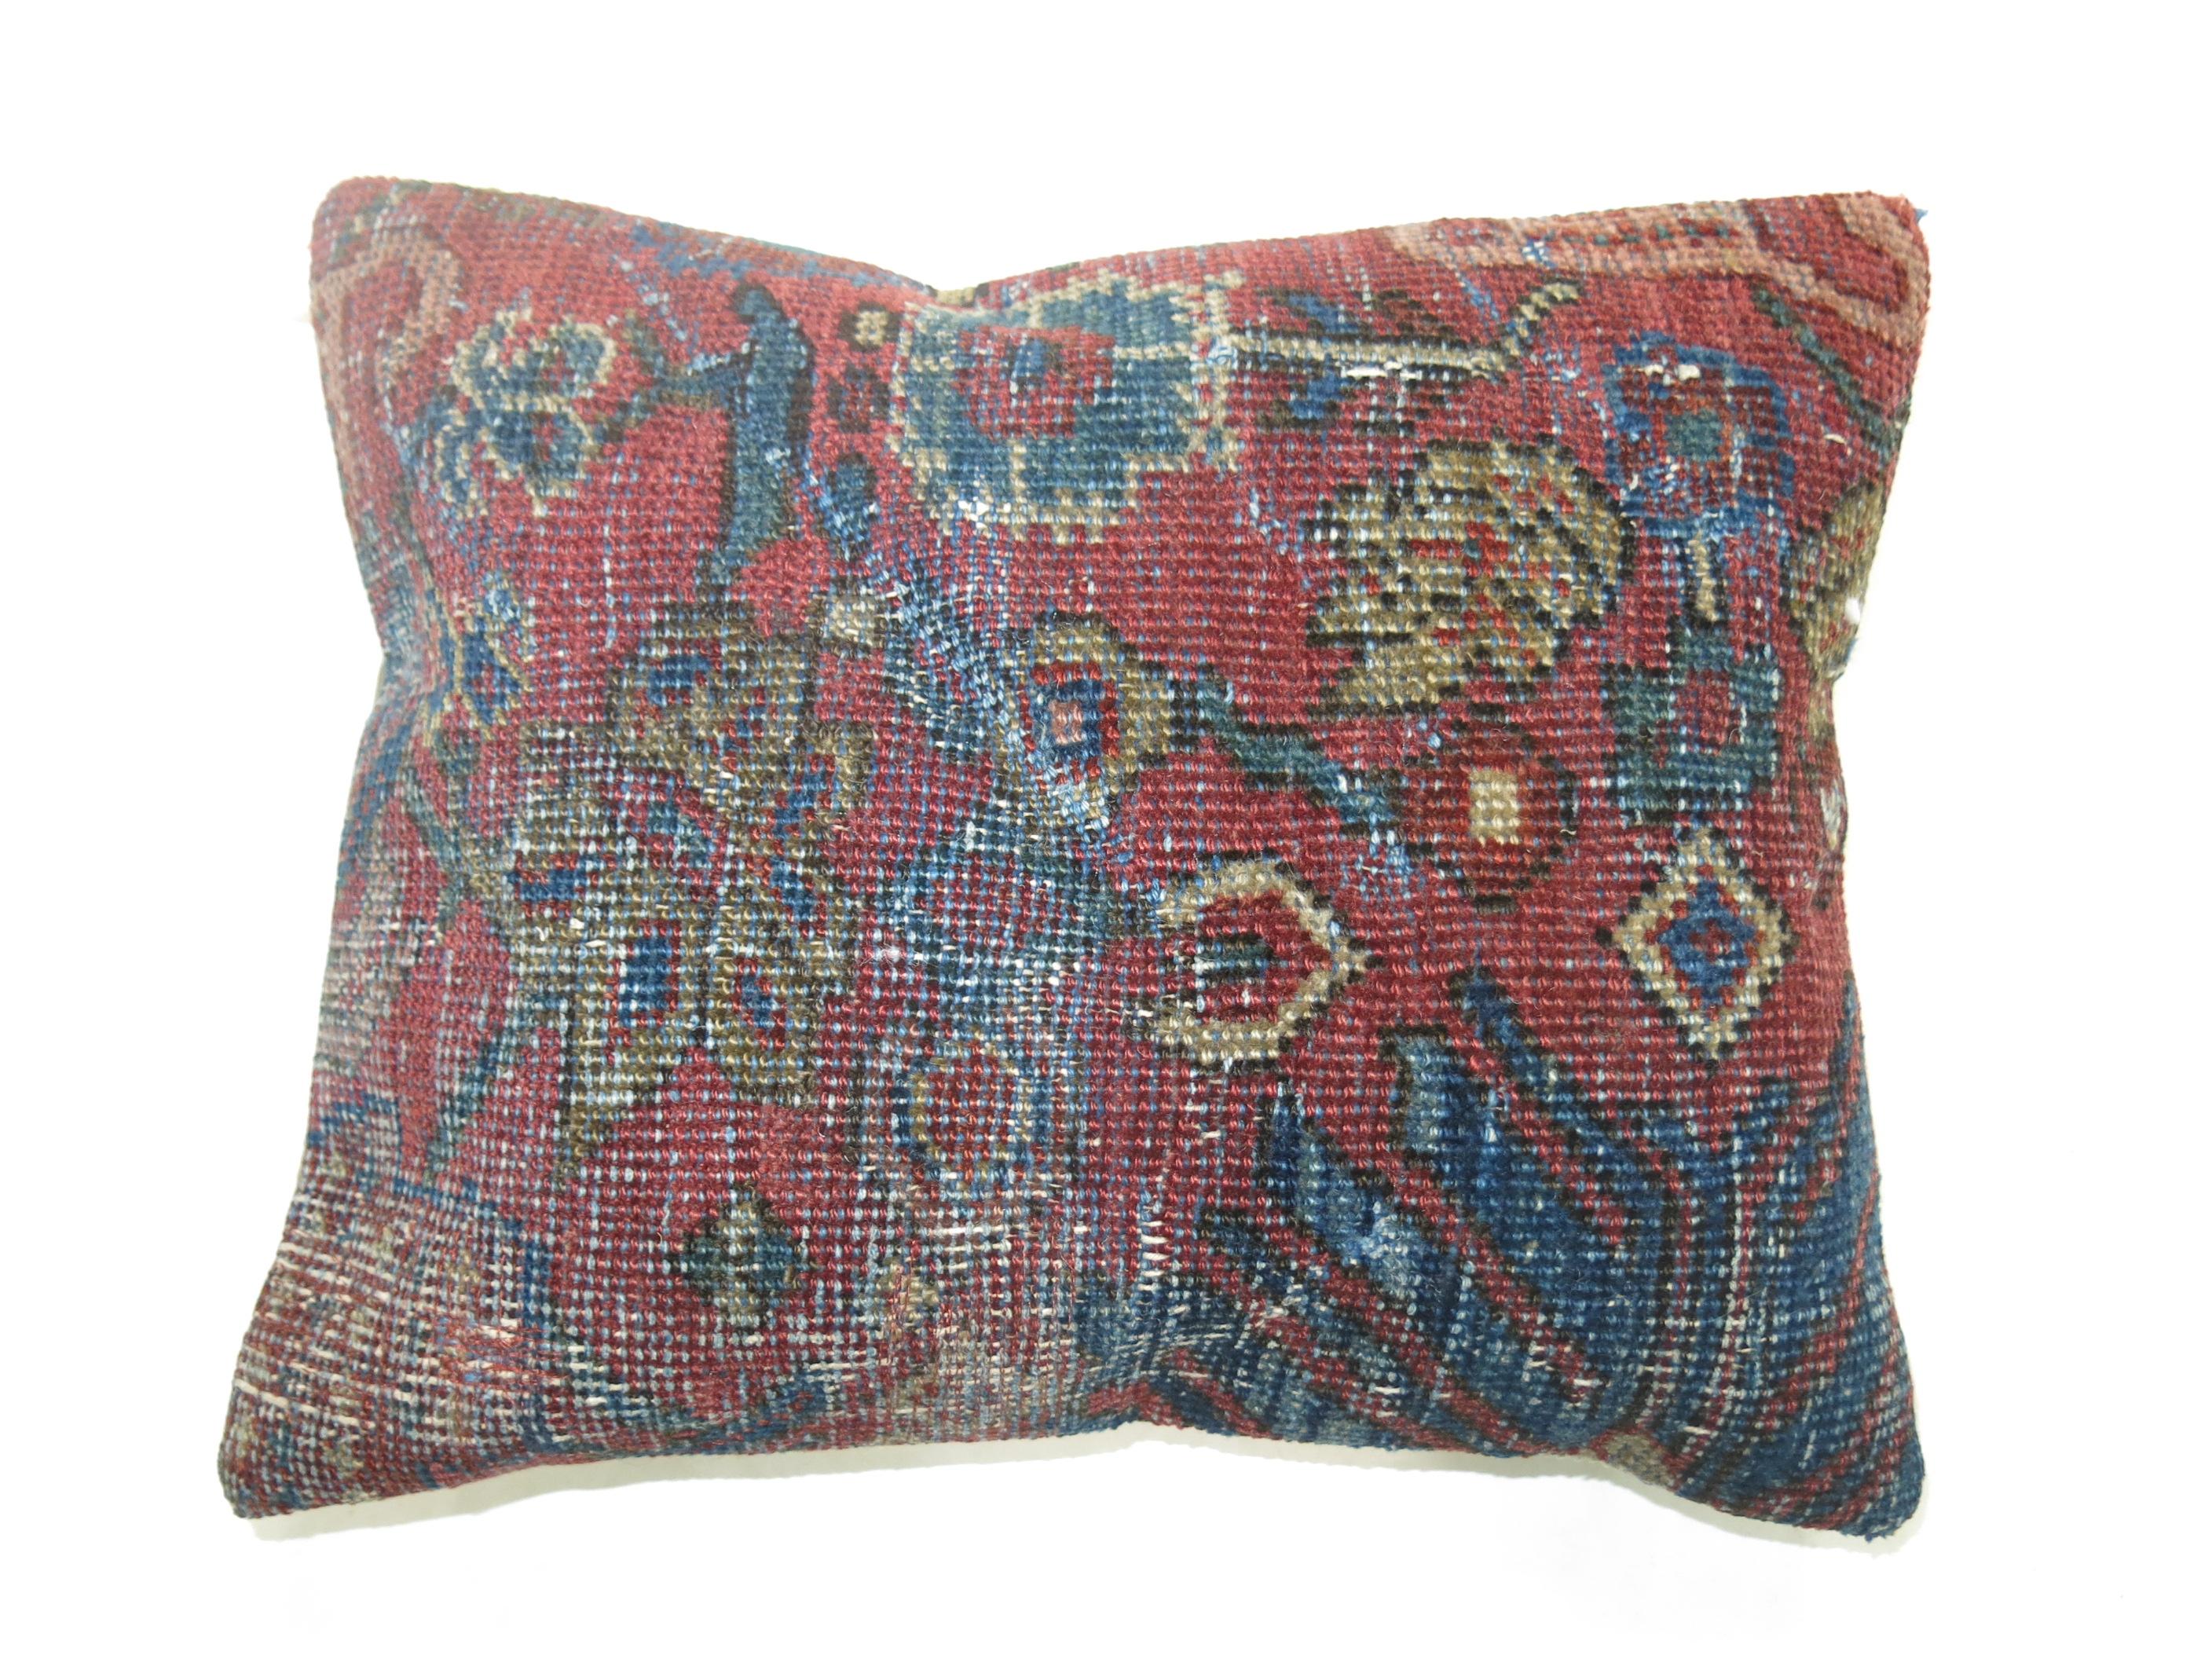 Oreiller fabriqué à partir d'un ancien tapis persan Mahal avec un dos en coton.

Mesures : 13'' x 16''.